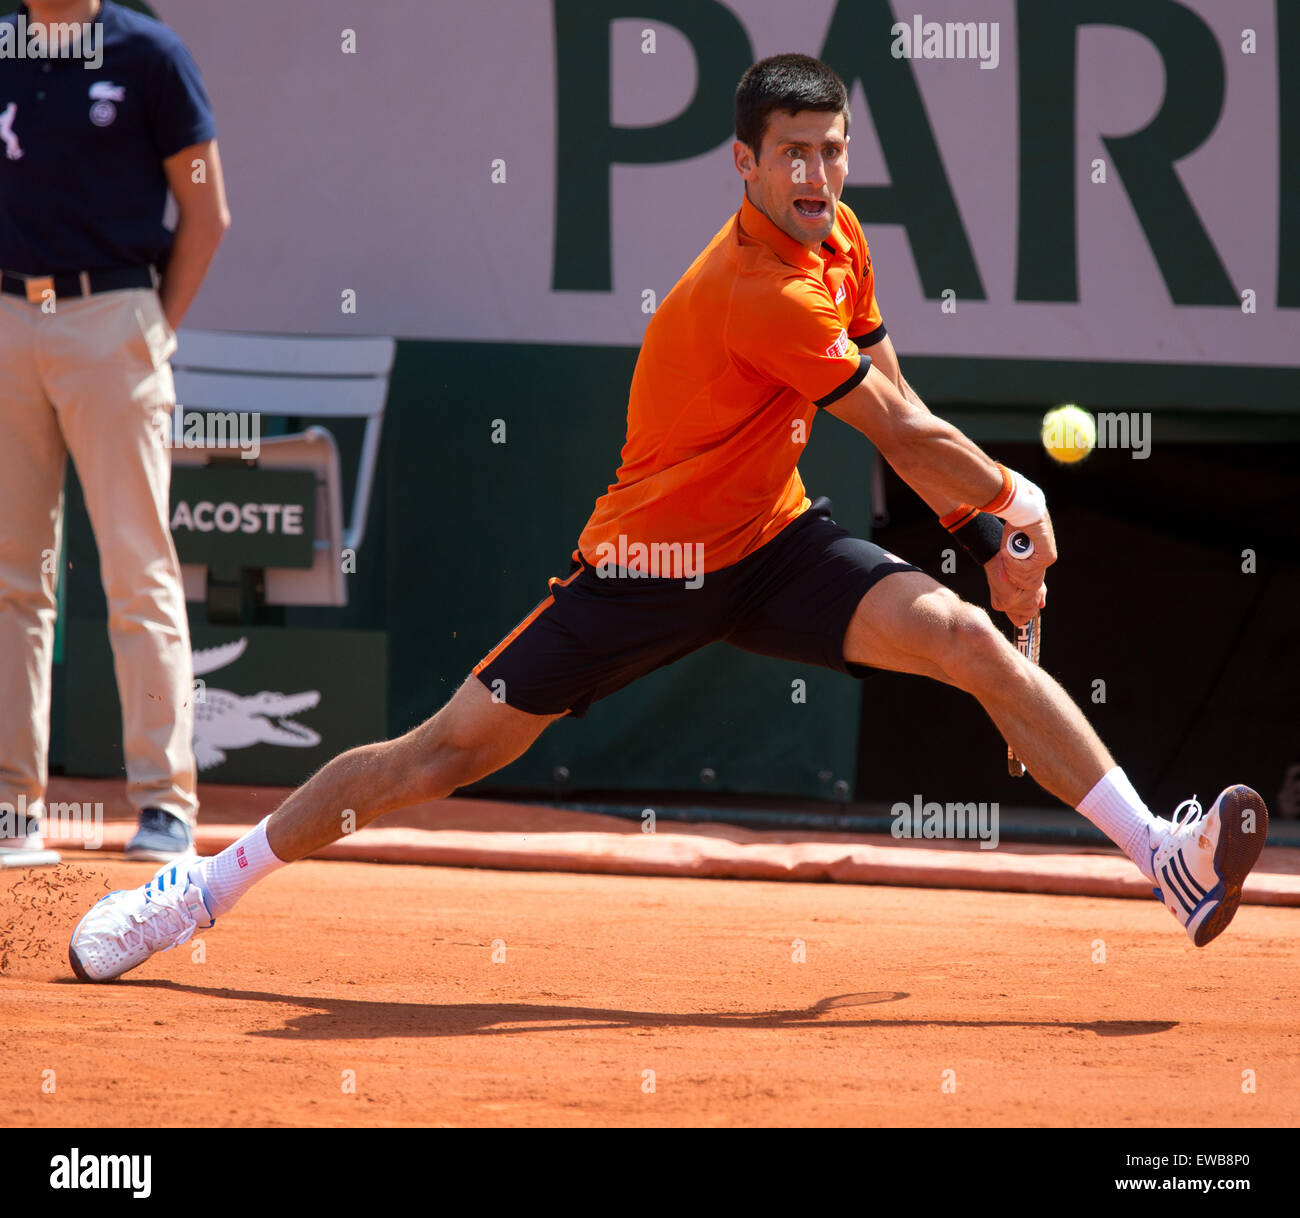 Novak Djokovic (SRB) en action à l'Open de France 2015 Banque D'Images